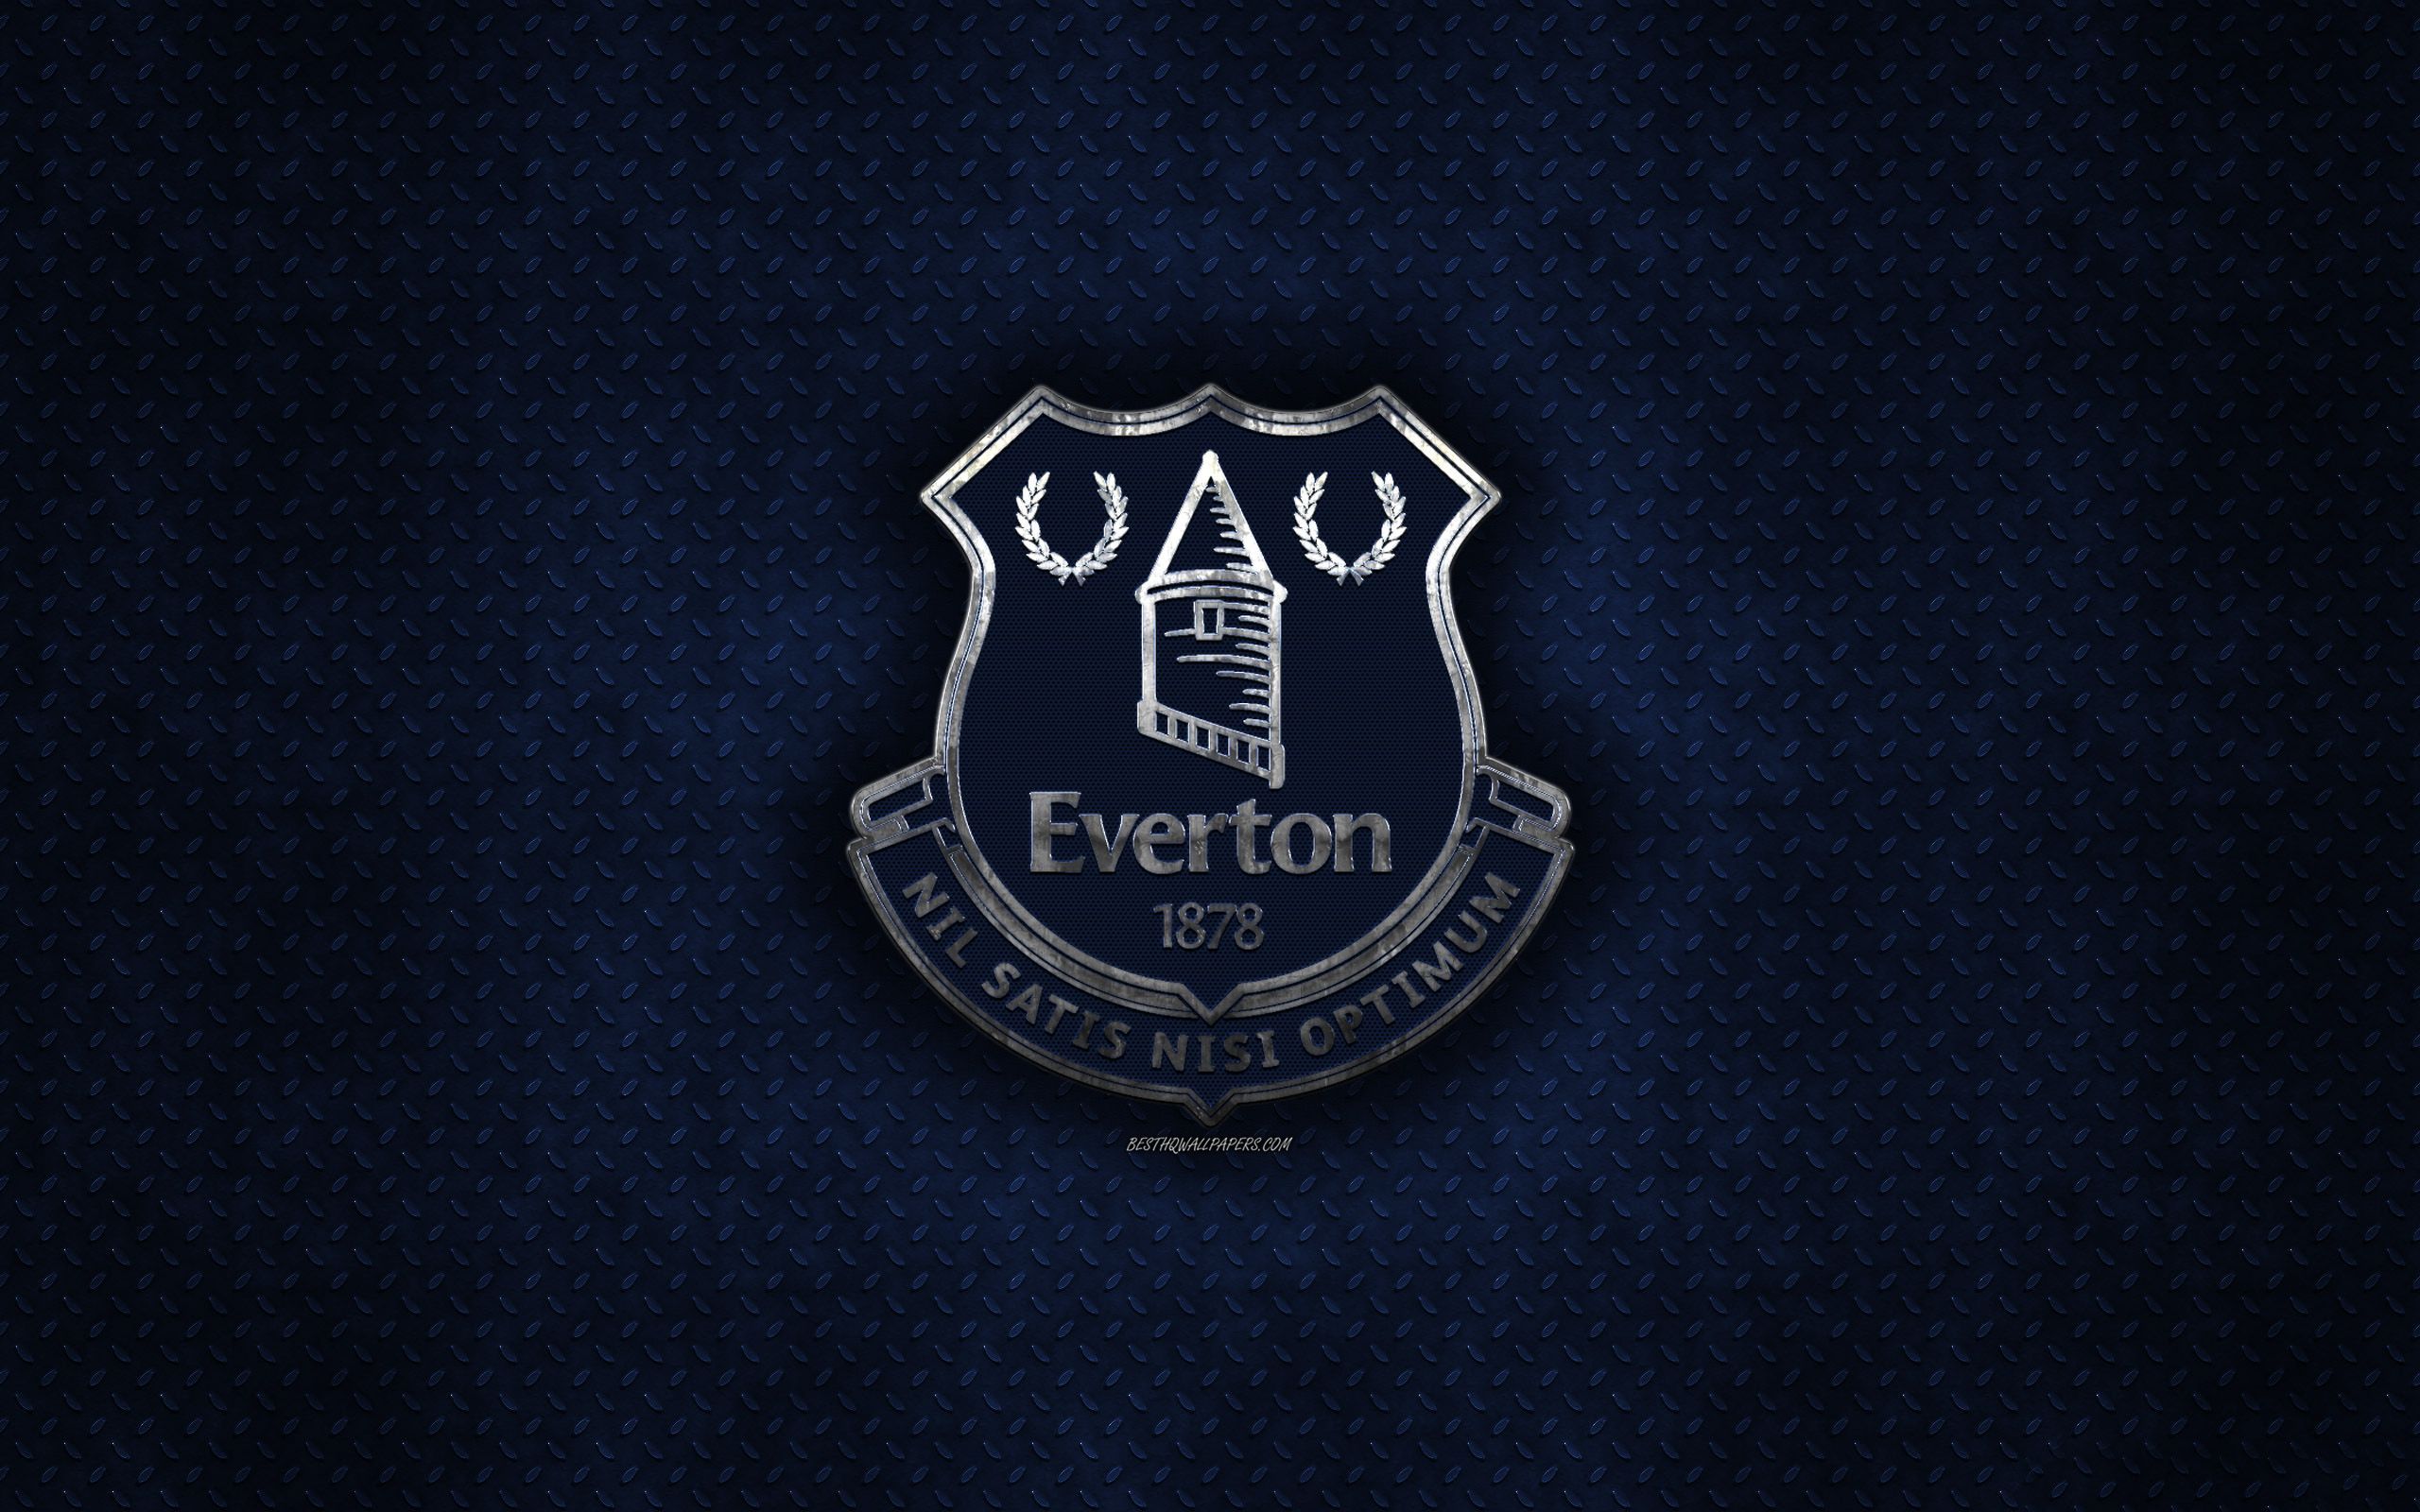 Everton Football Club Wallpaper Free Everton Football Club